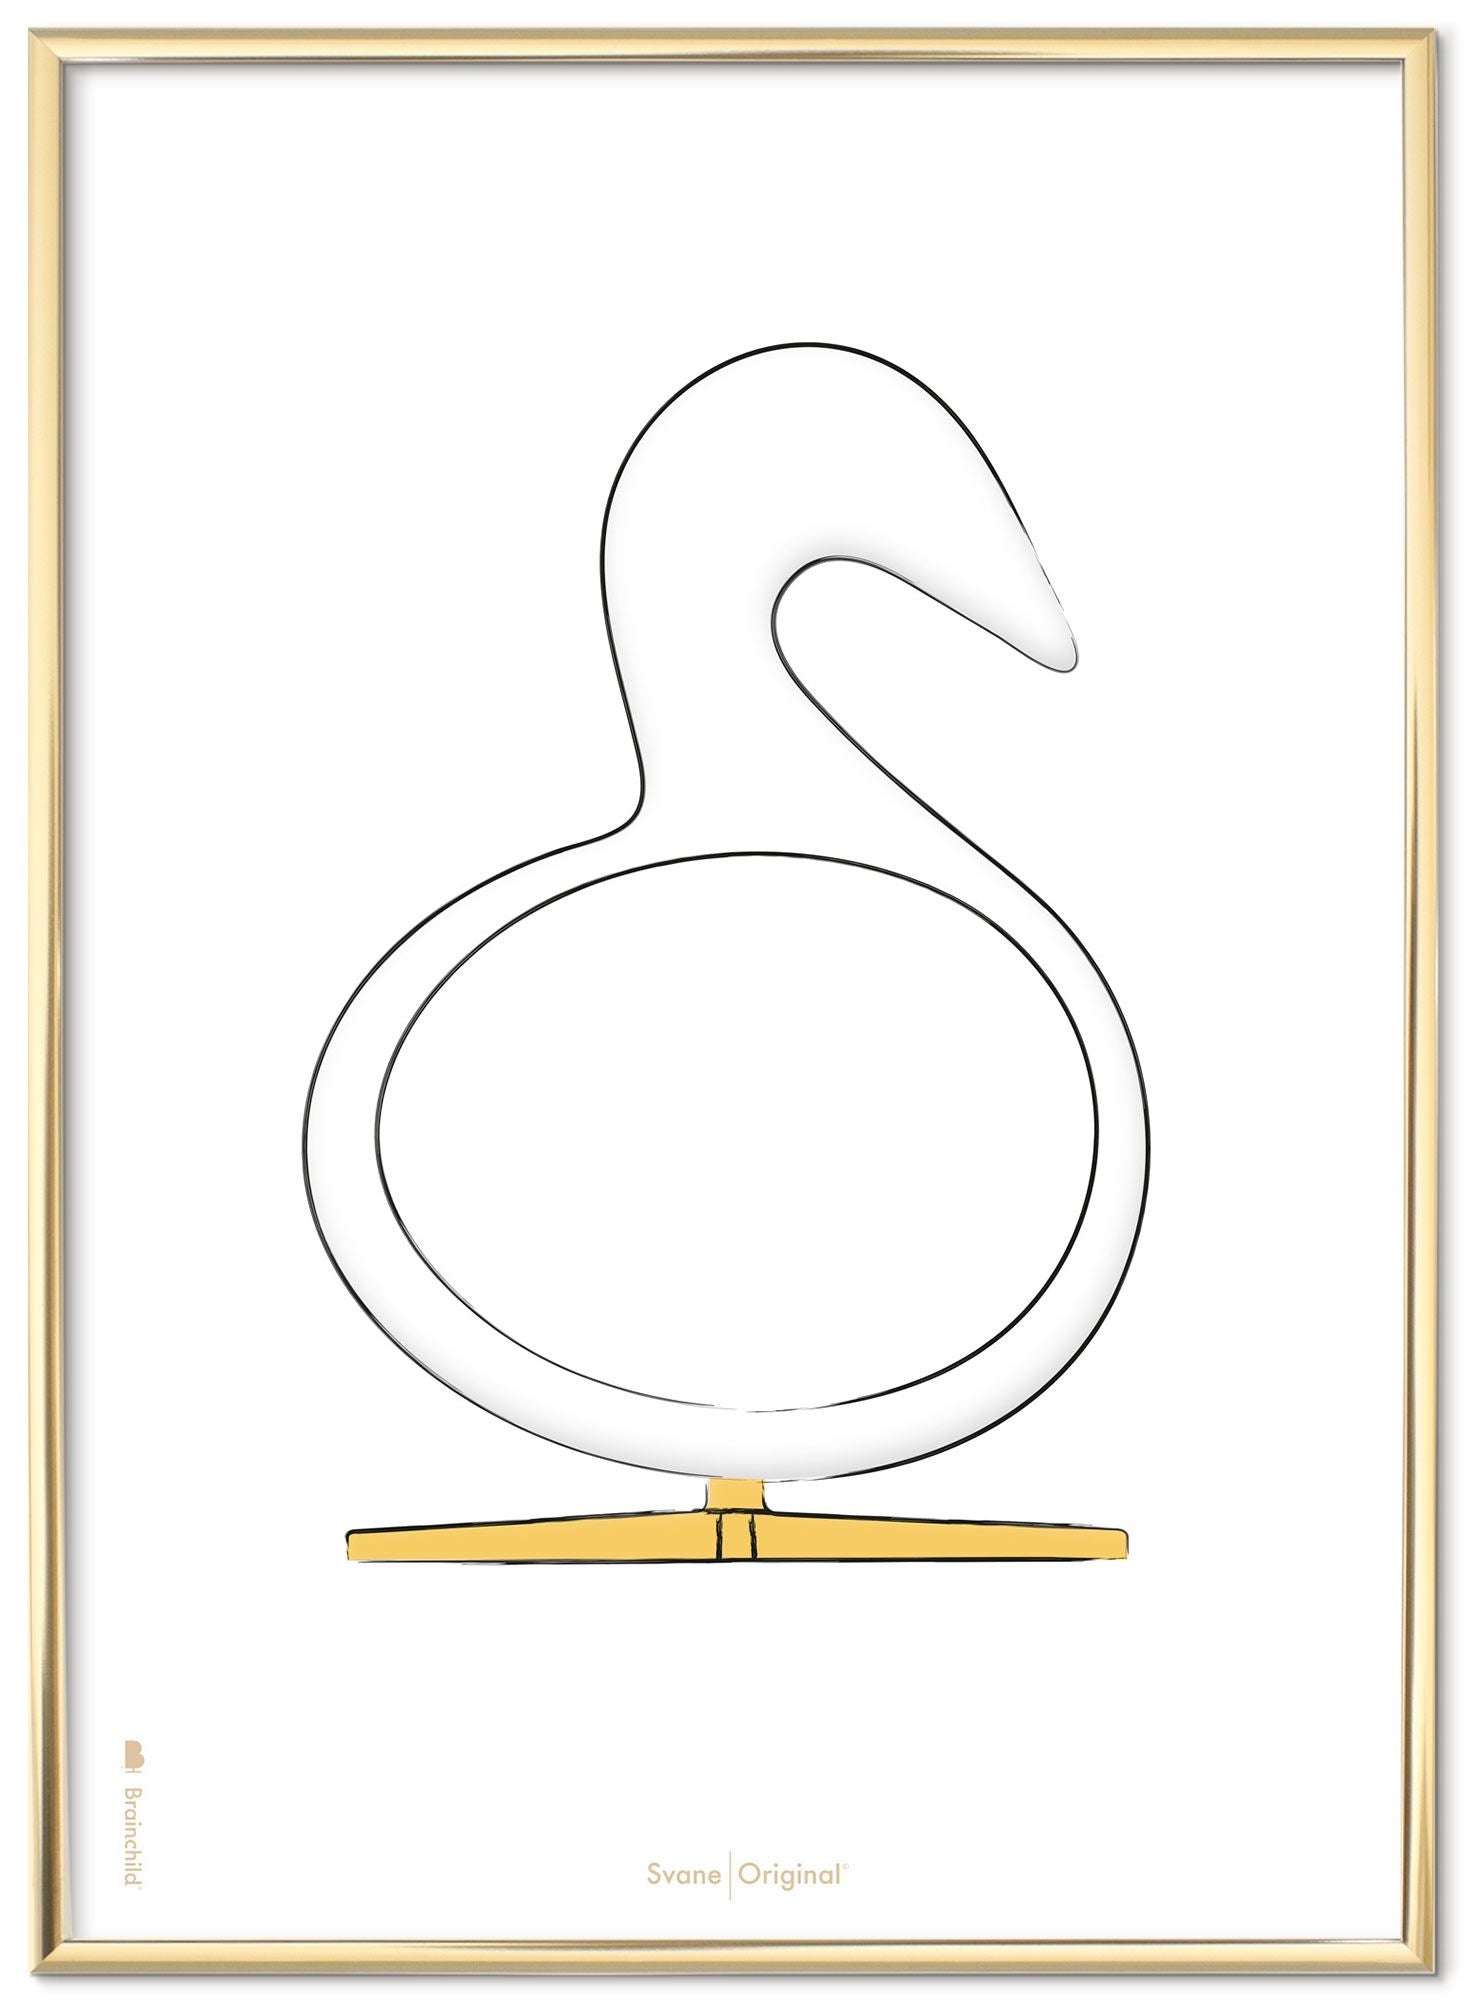 Schema poster di disegno di disegno del cigno da gioco in metallo colorato in ottone 30x40 cm, sfondo bianco